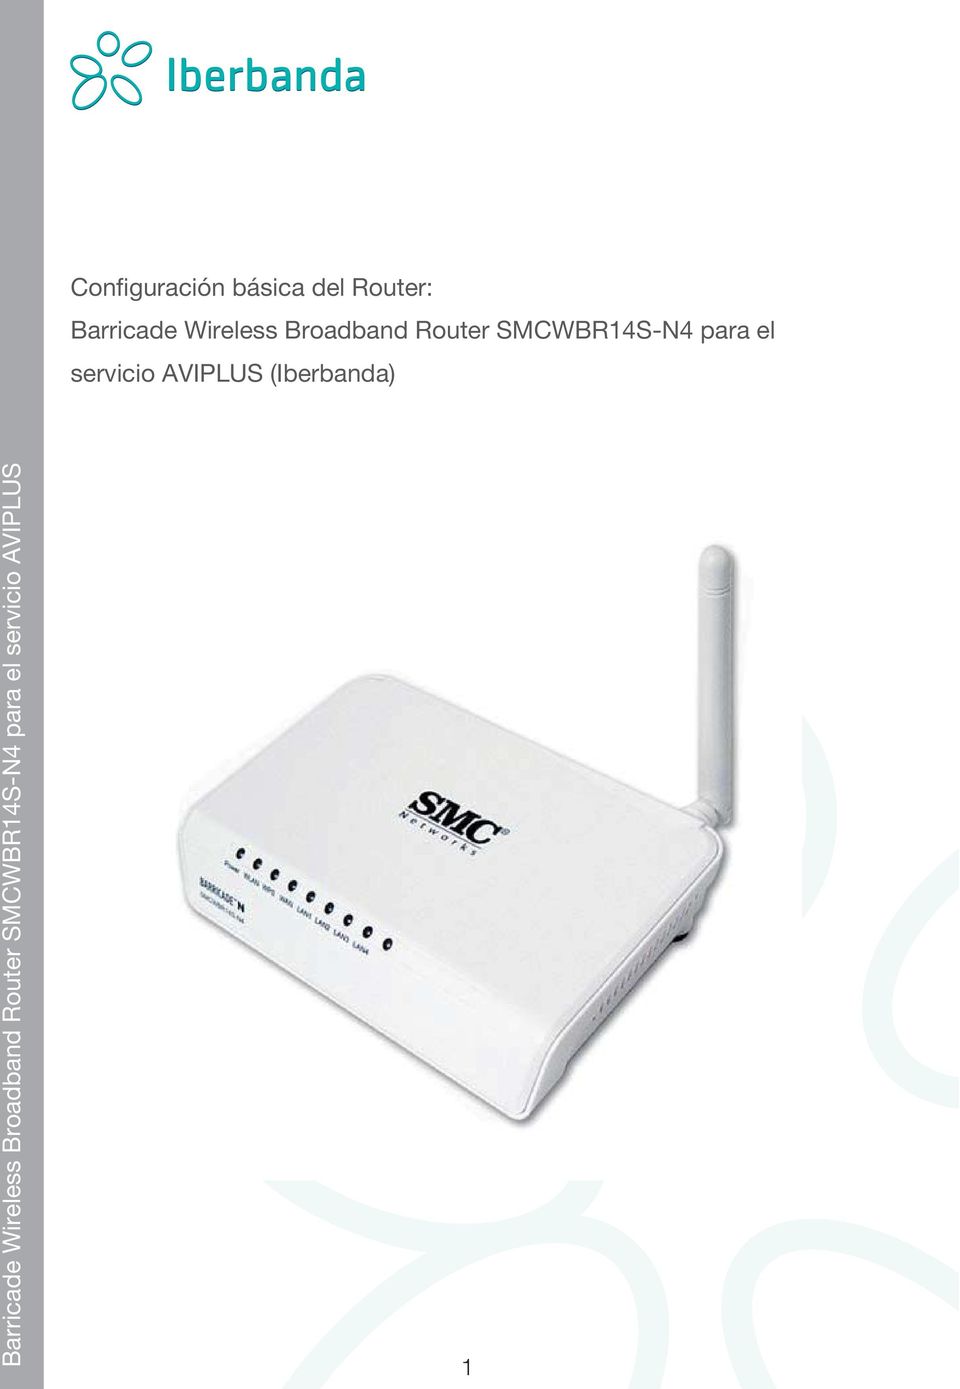 Broadband Router SMCWBR14S-N4